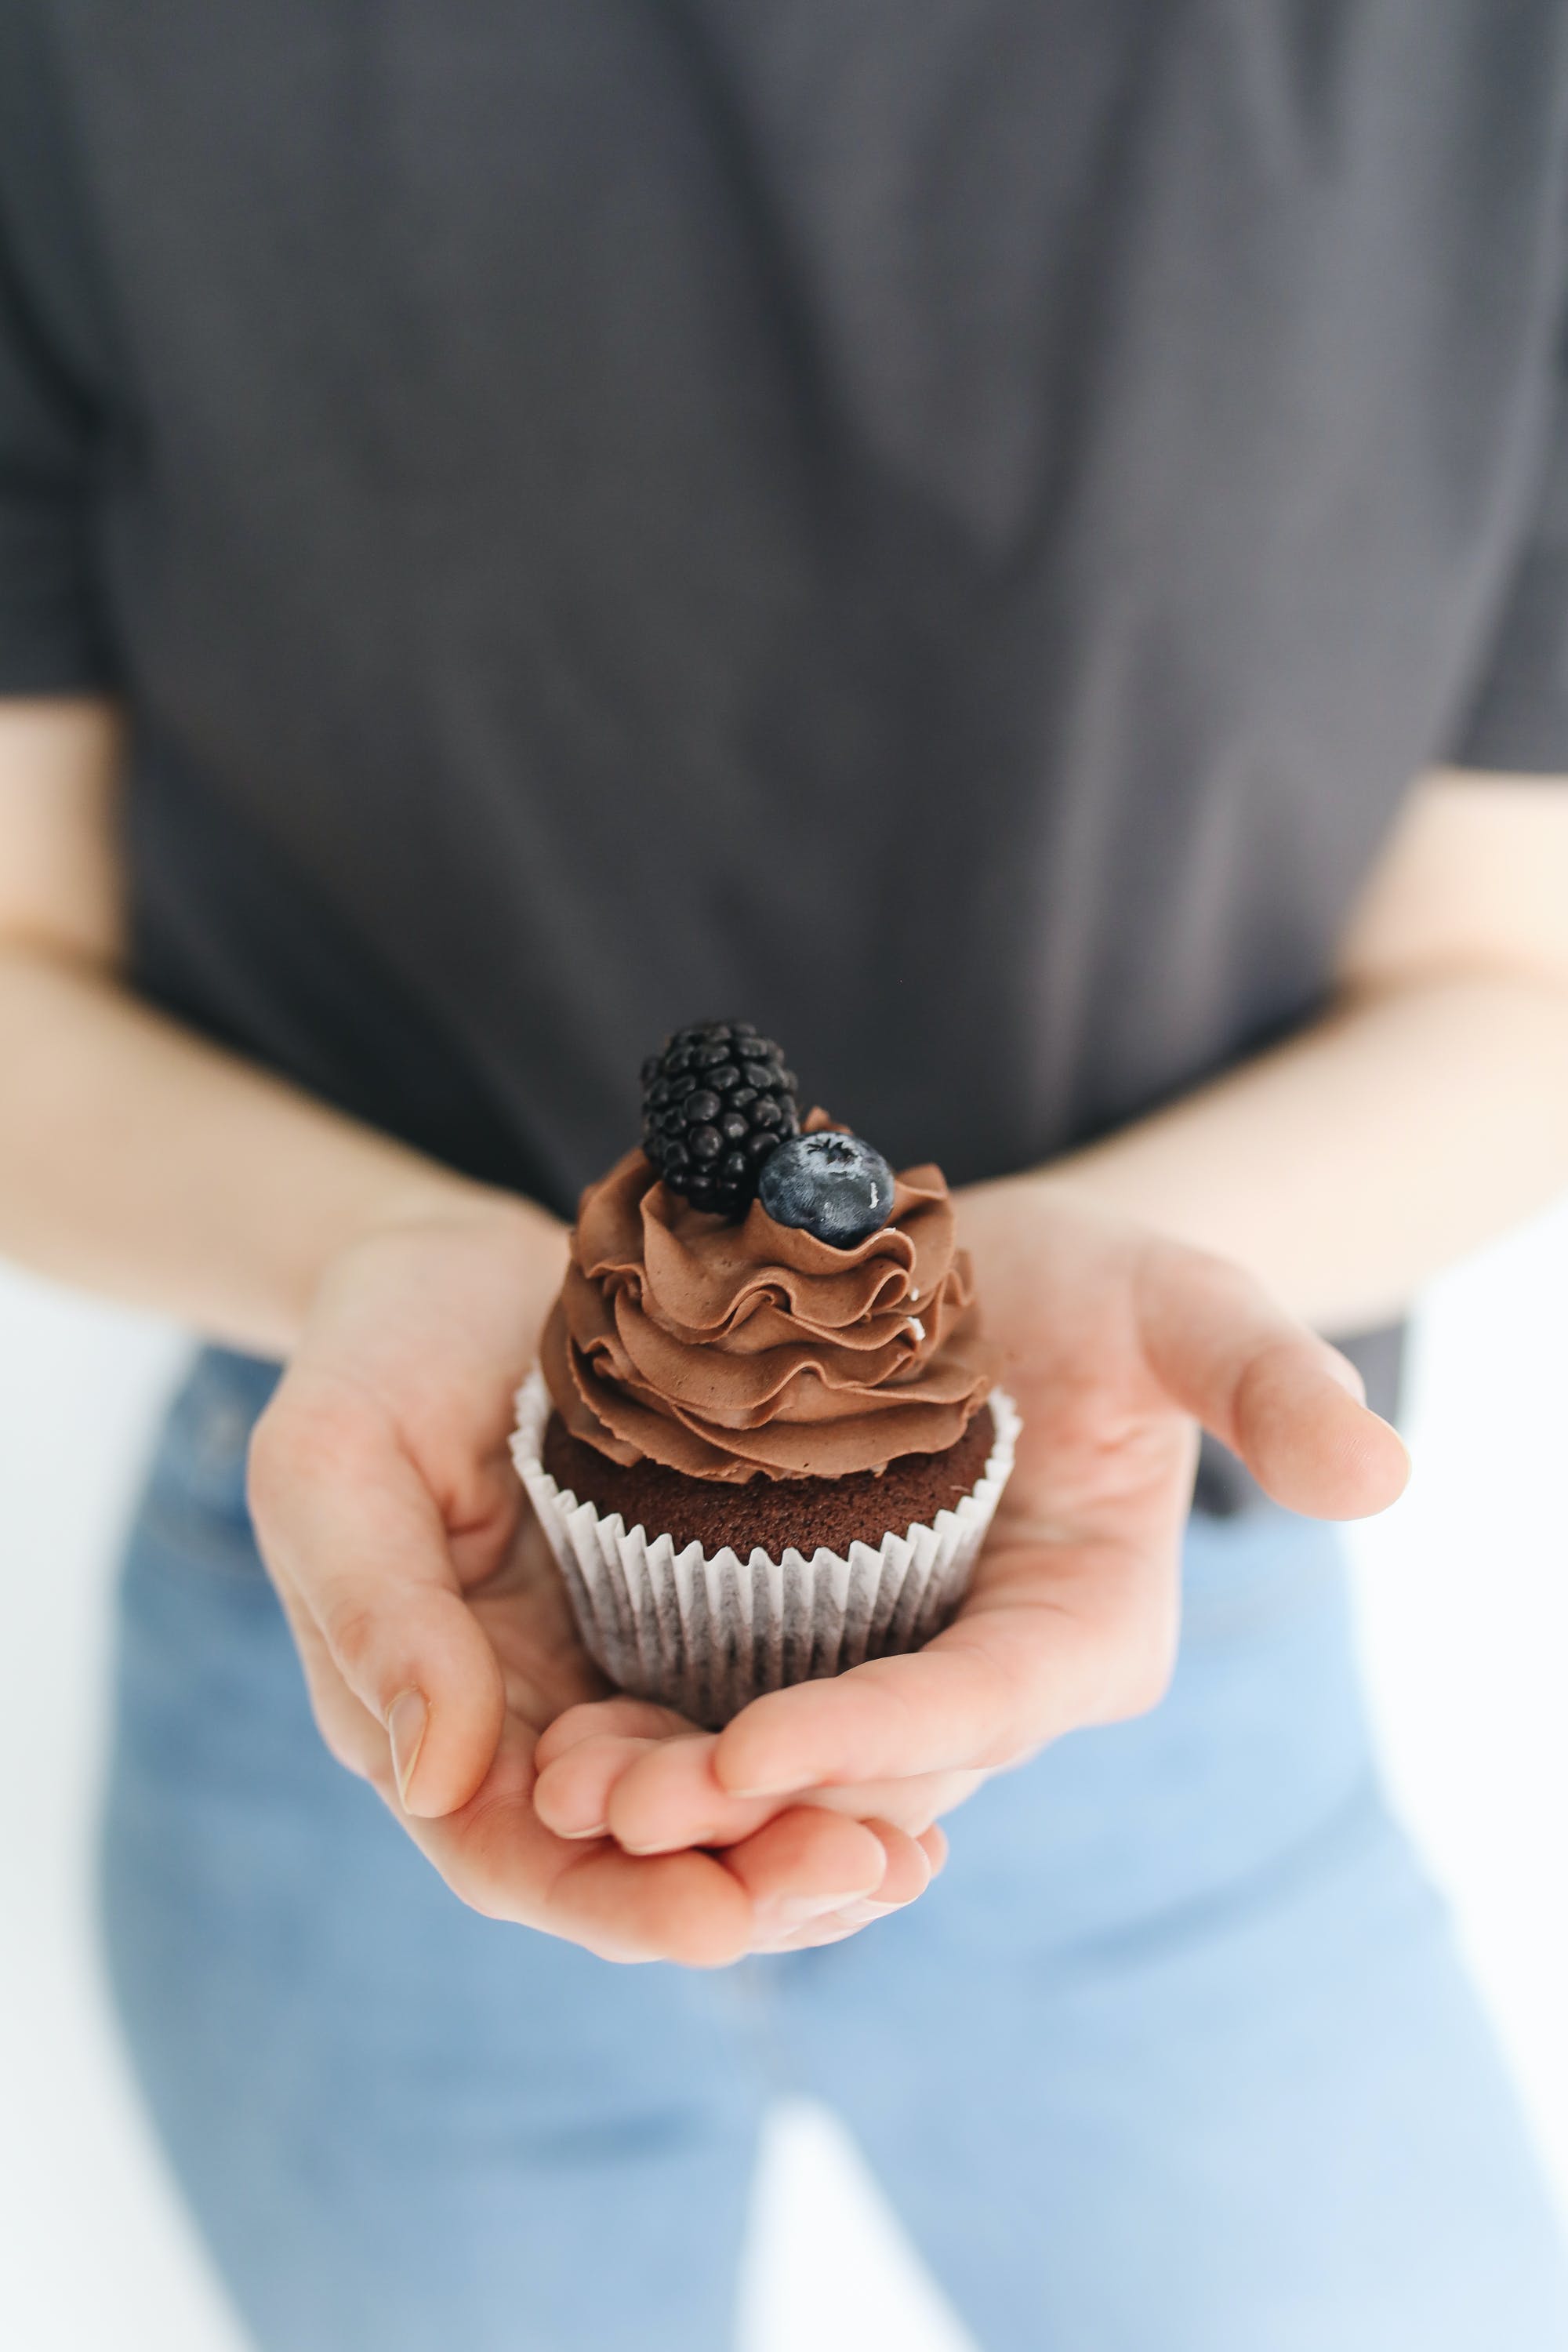 Una persona con una magdalena de chocolate en la mano. | Fuente: Pexels